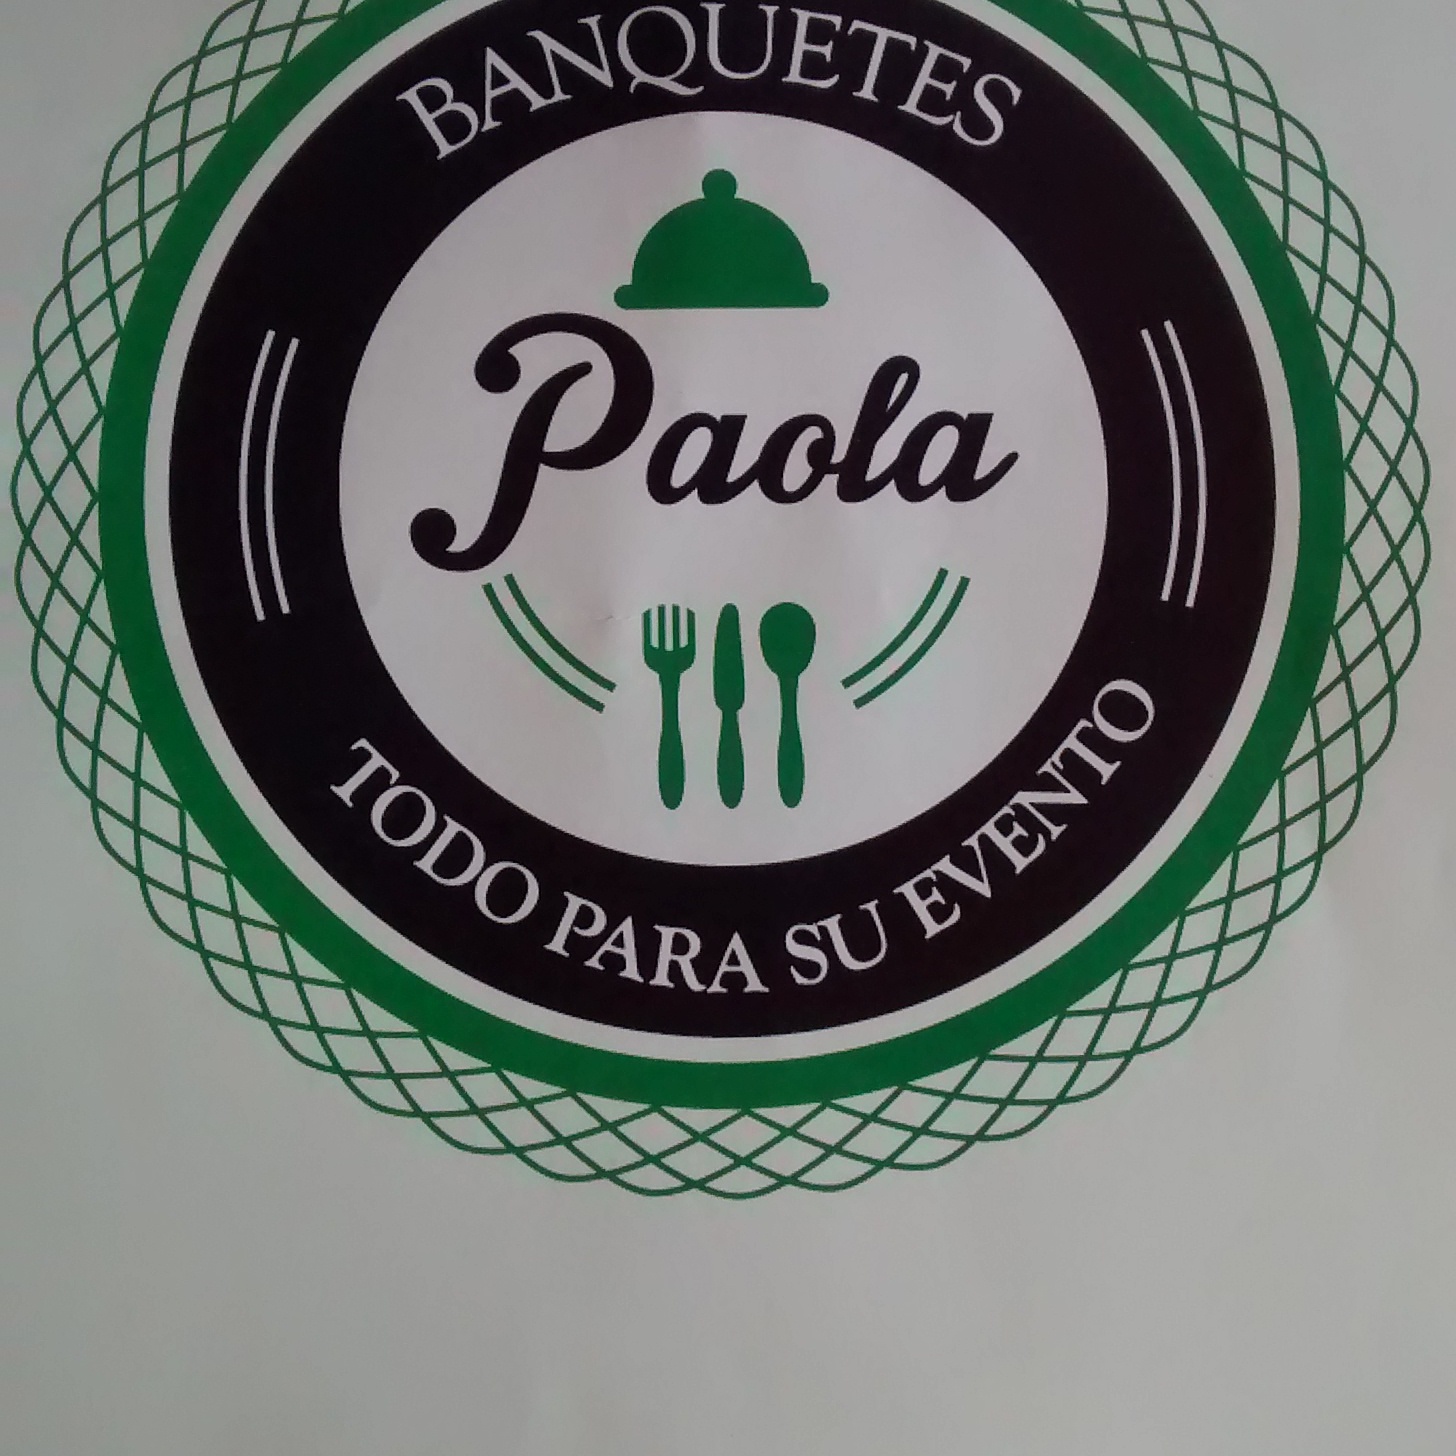 BANQUETES PAOLA